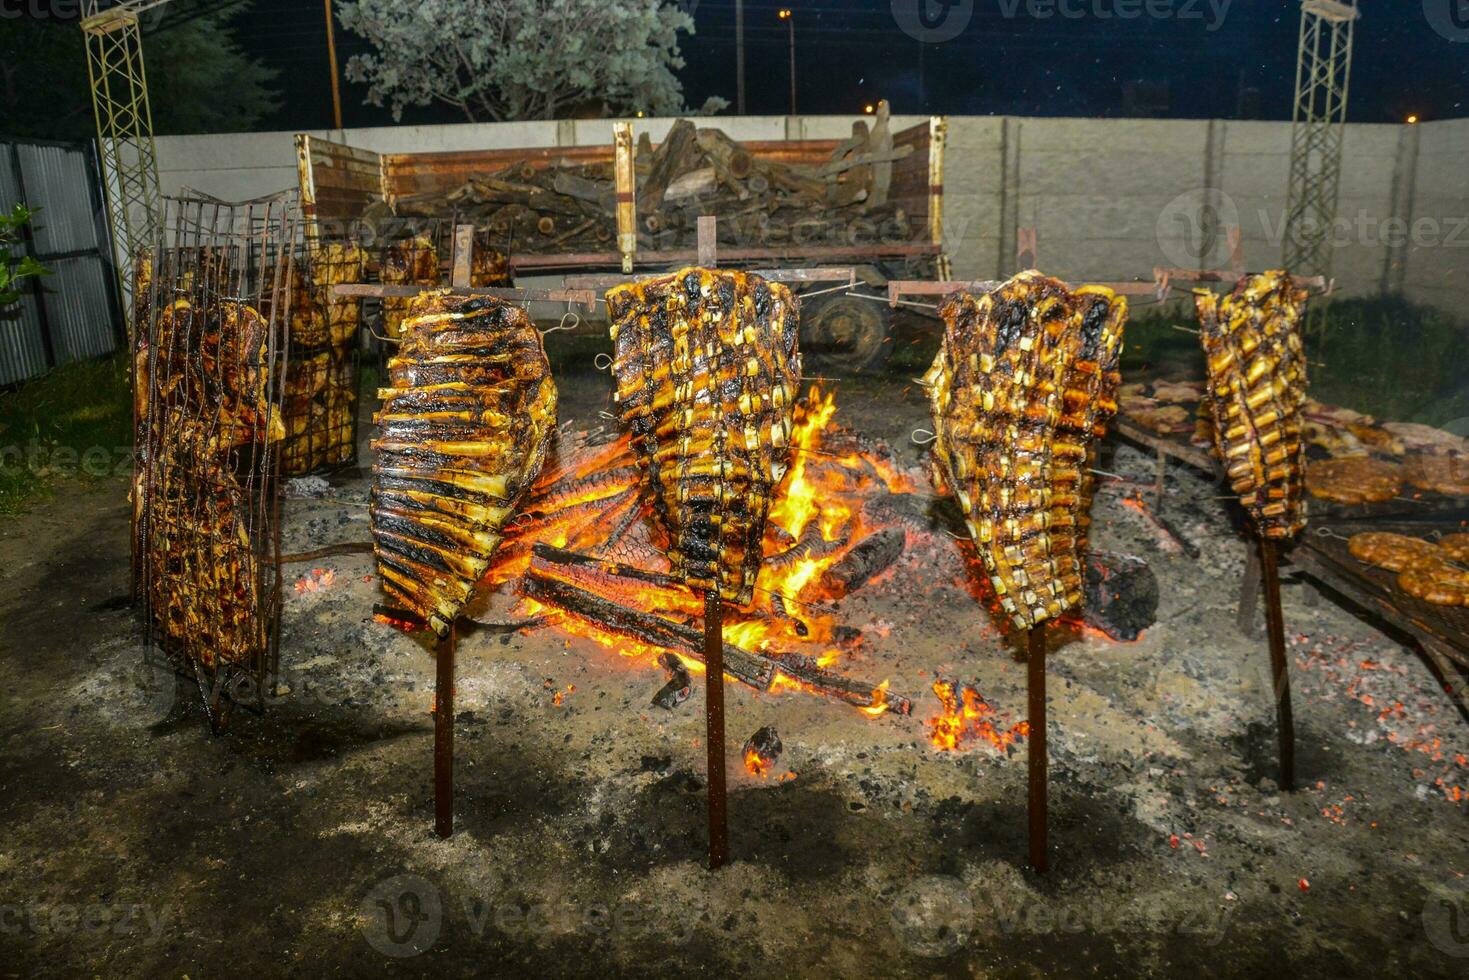 barbecue koe ribben, traditioneel Argentijns gebraden foto